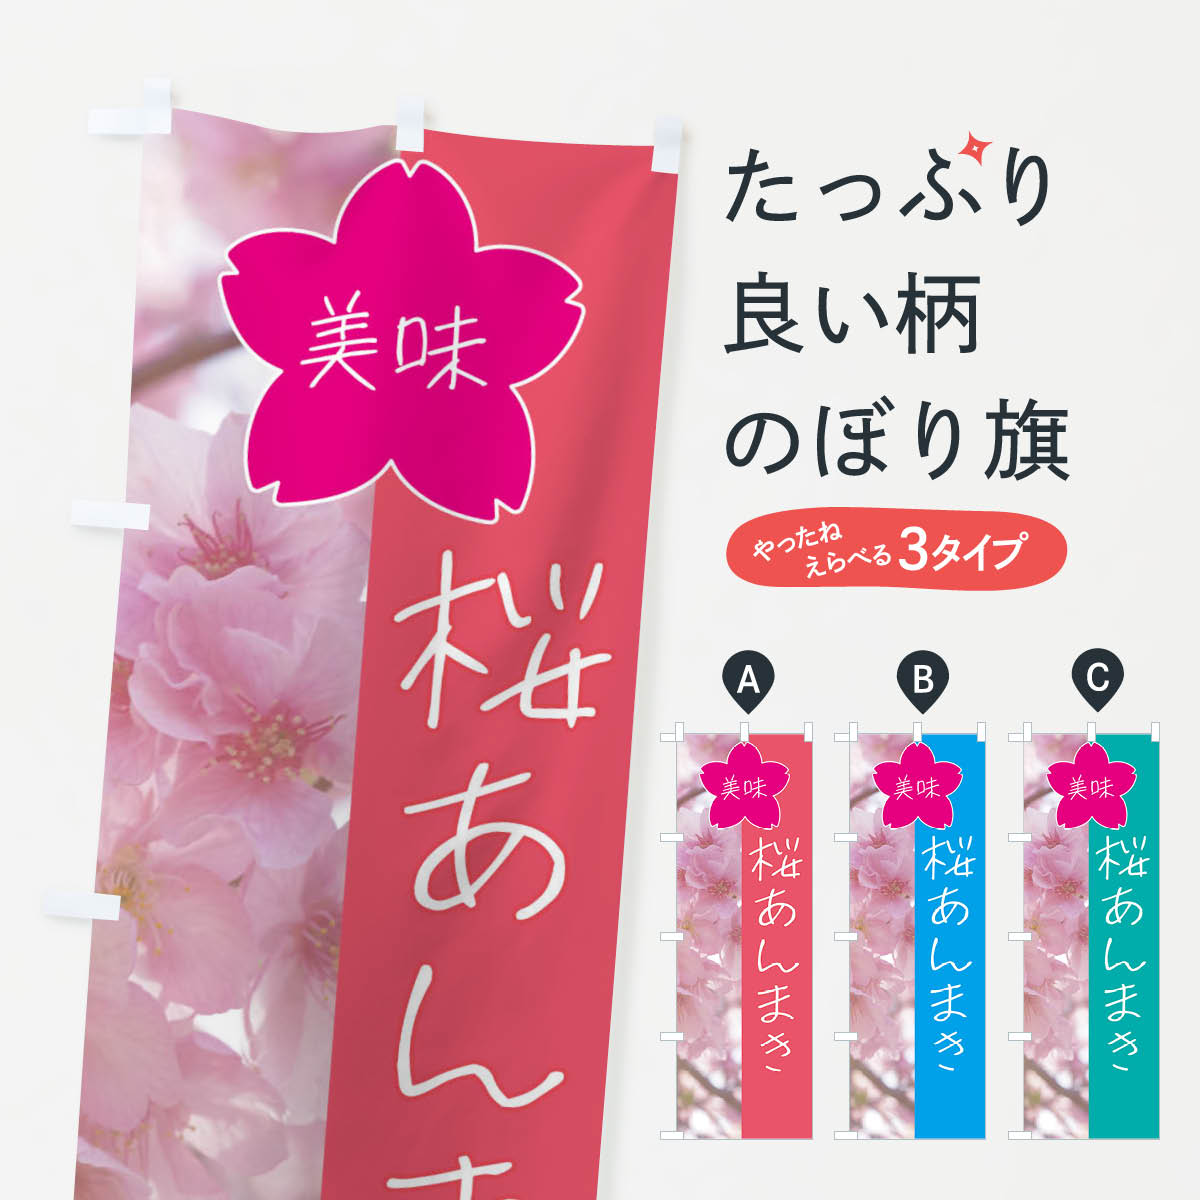 【全国送料360円】 のぼり旗 桜あんまきのぼり 4G60 